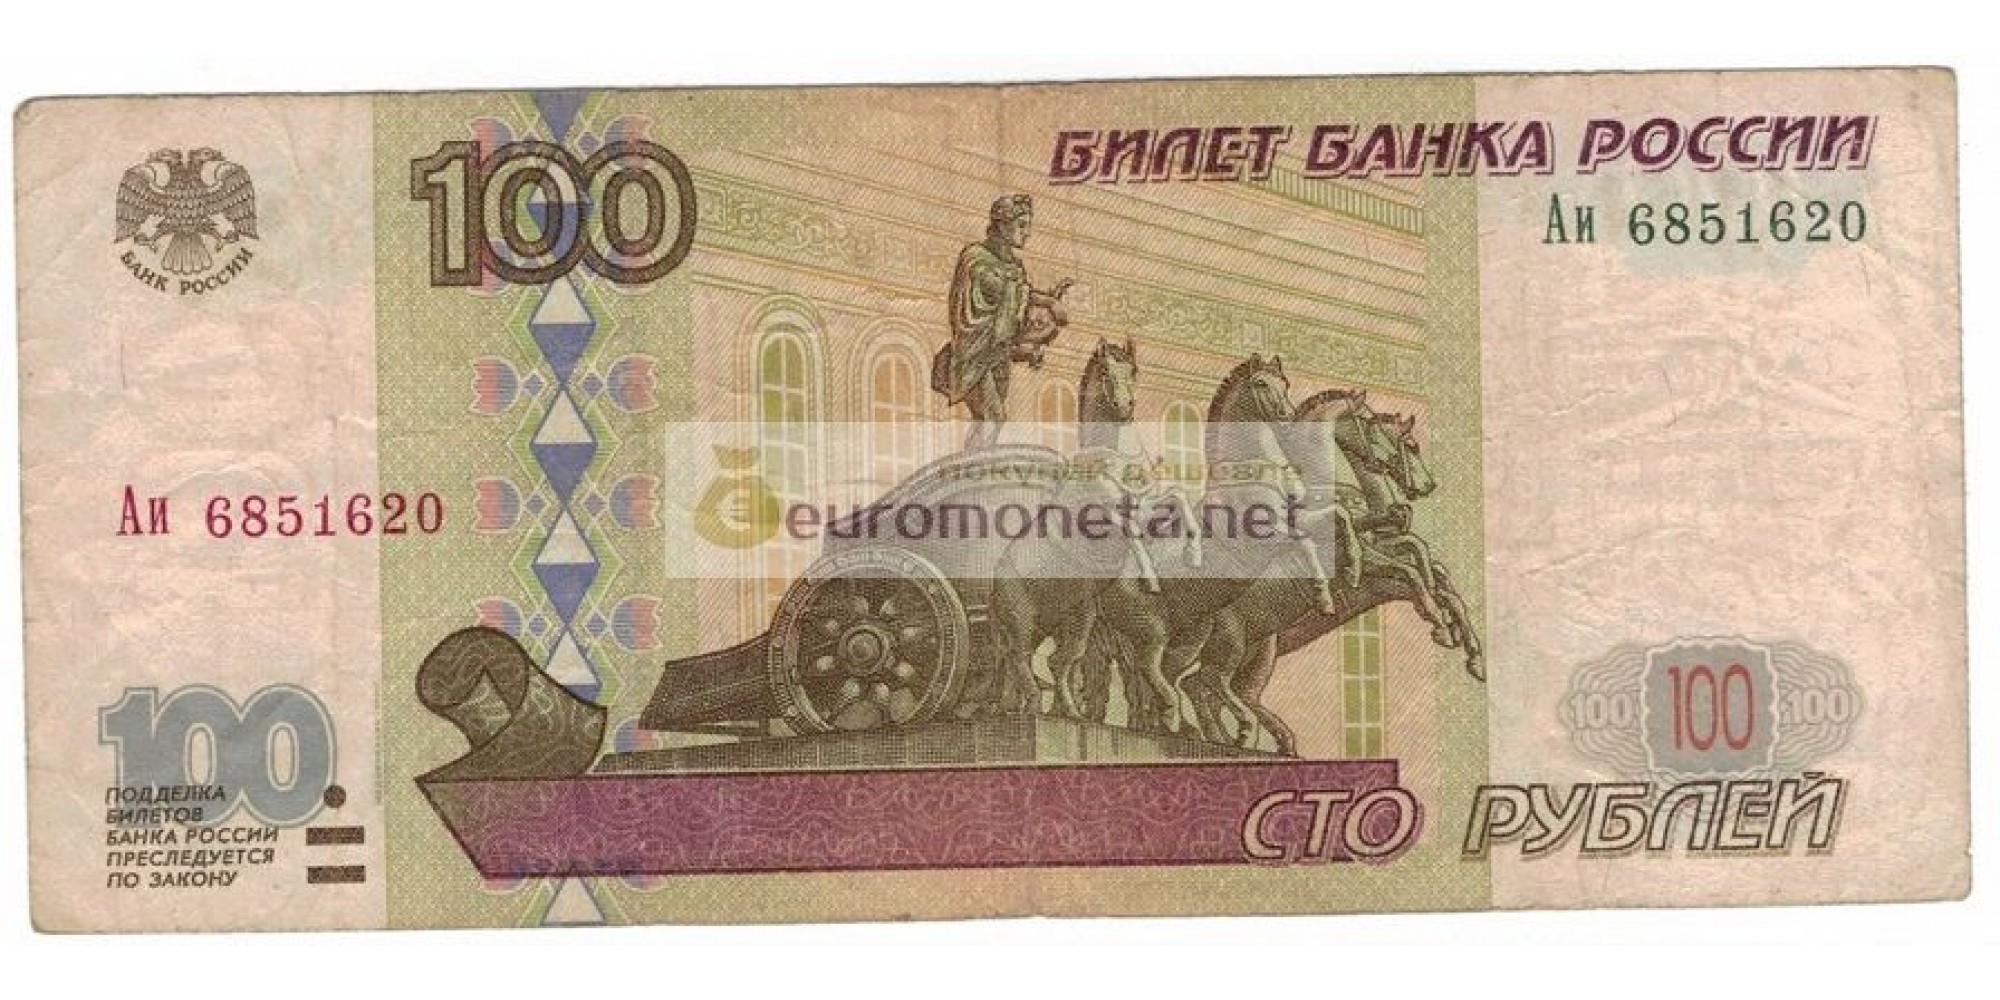 Россия 100 рублей 1997 год модификация 2001 год серия Аи 6851620